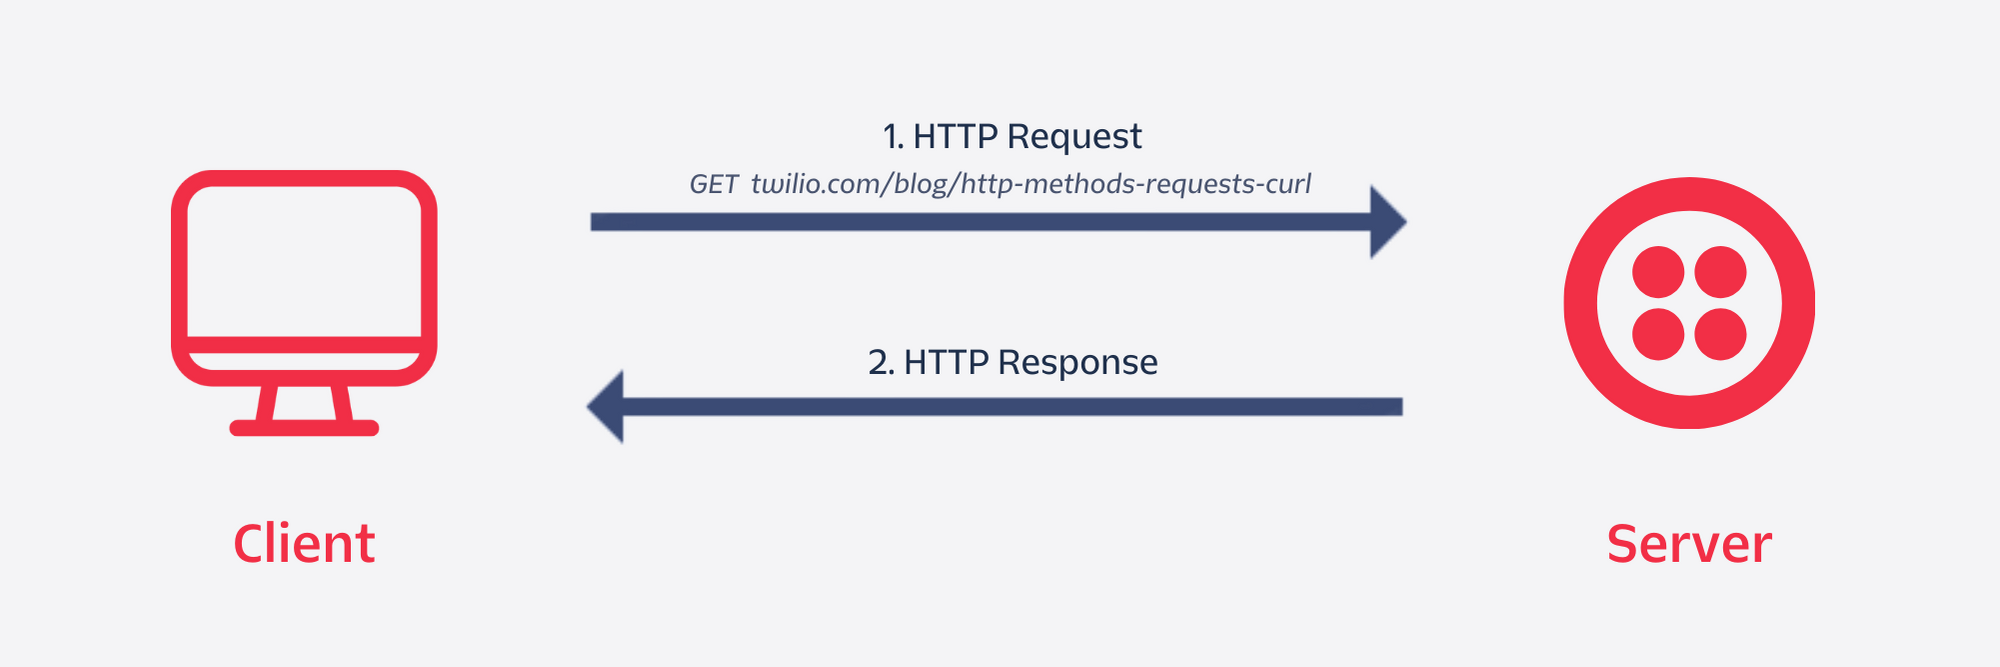 HTTP Request Flow diagram